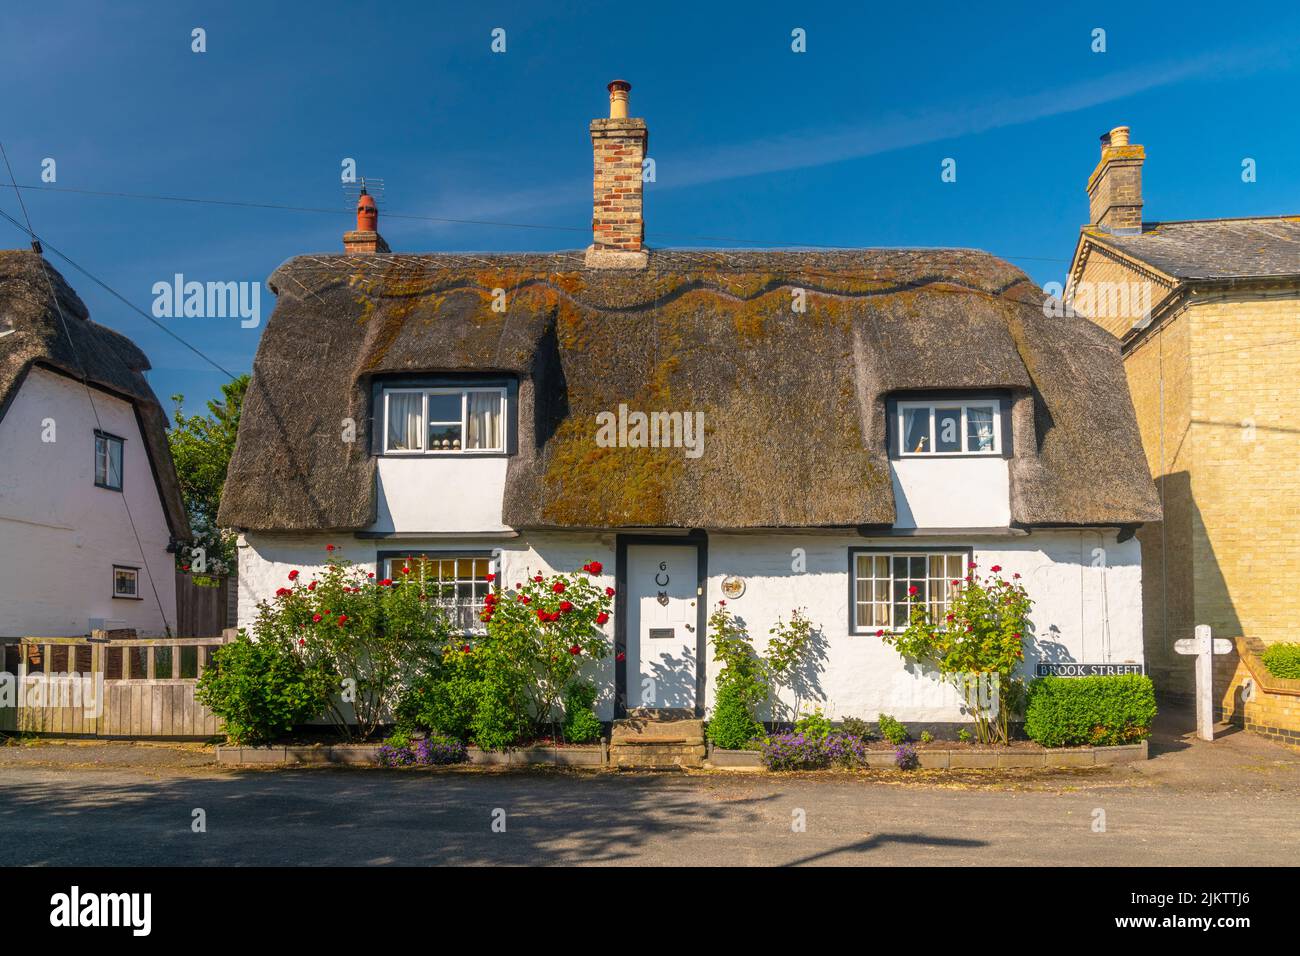 Royaume-Uni, Angleterre, Cambridgeshire, Elsworth, chalet traditionnel de chaume Banque D'Images